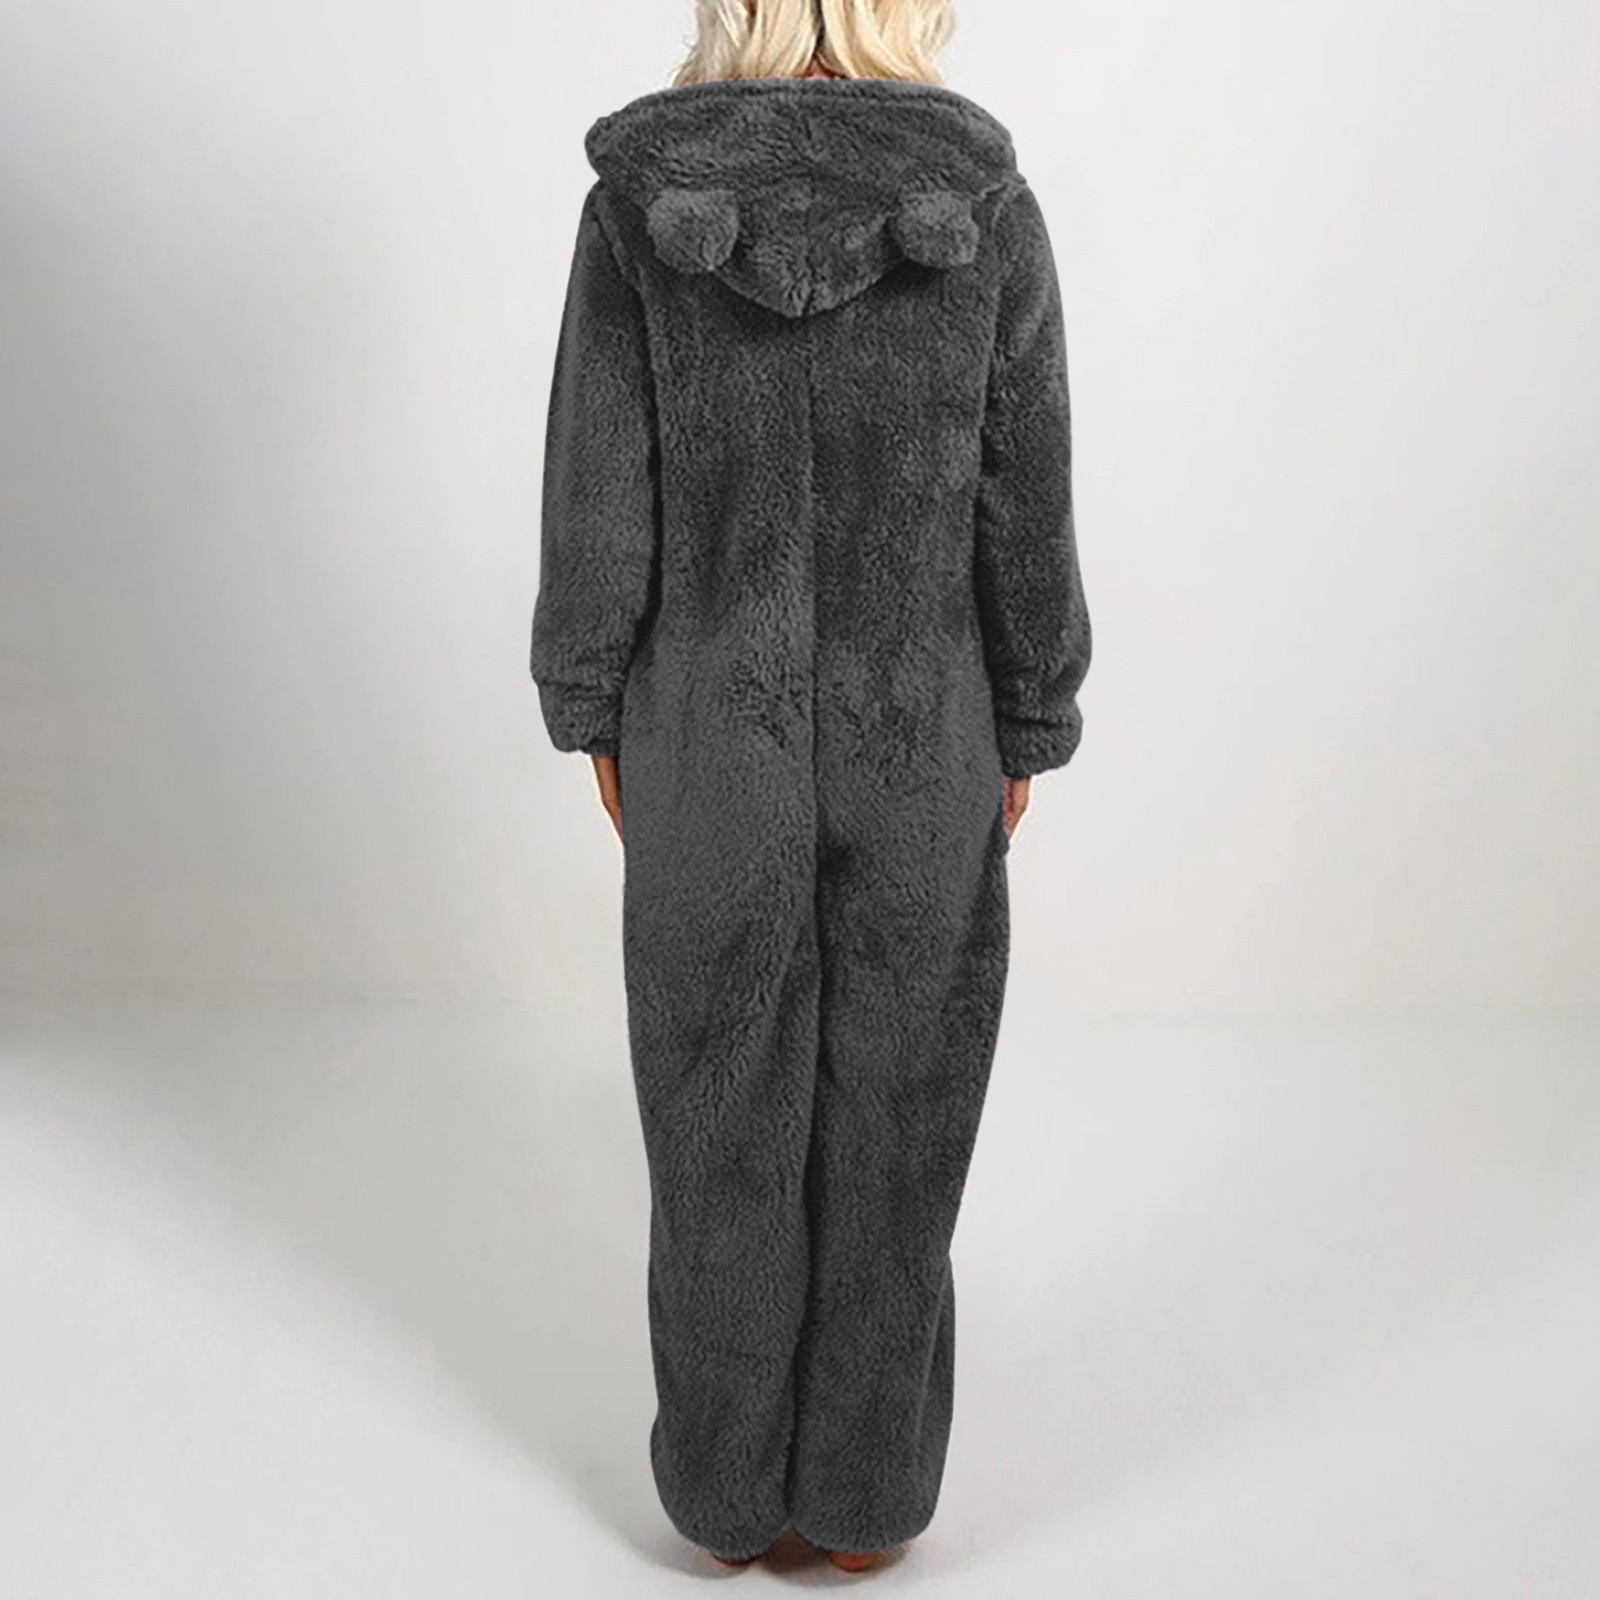 jsaierl Women Onesies Fluffy Fleece Jumpsuits Sleepwear Plus Size Hood ...